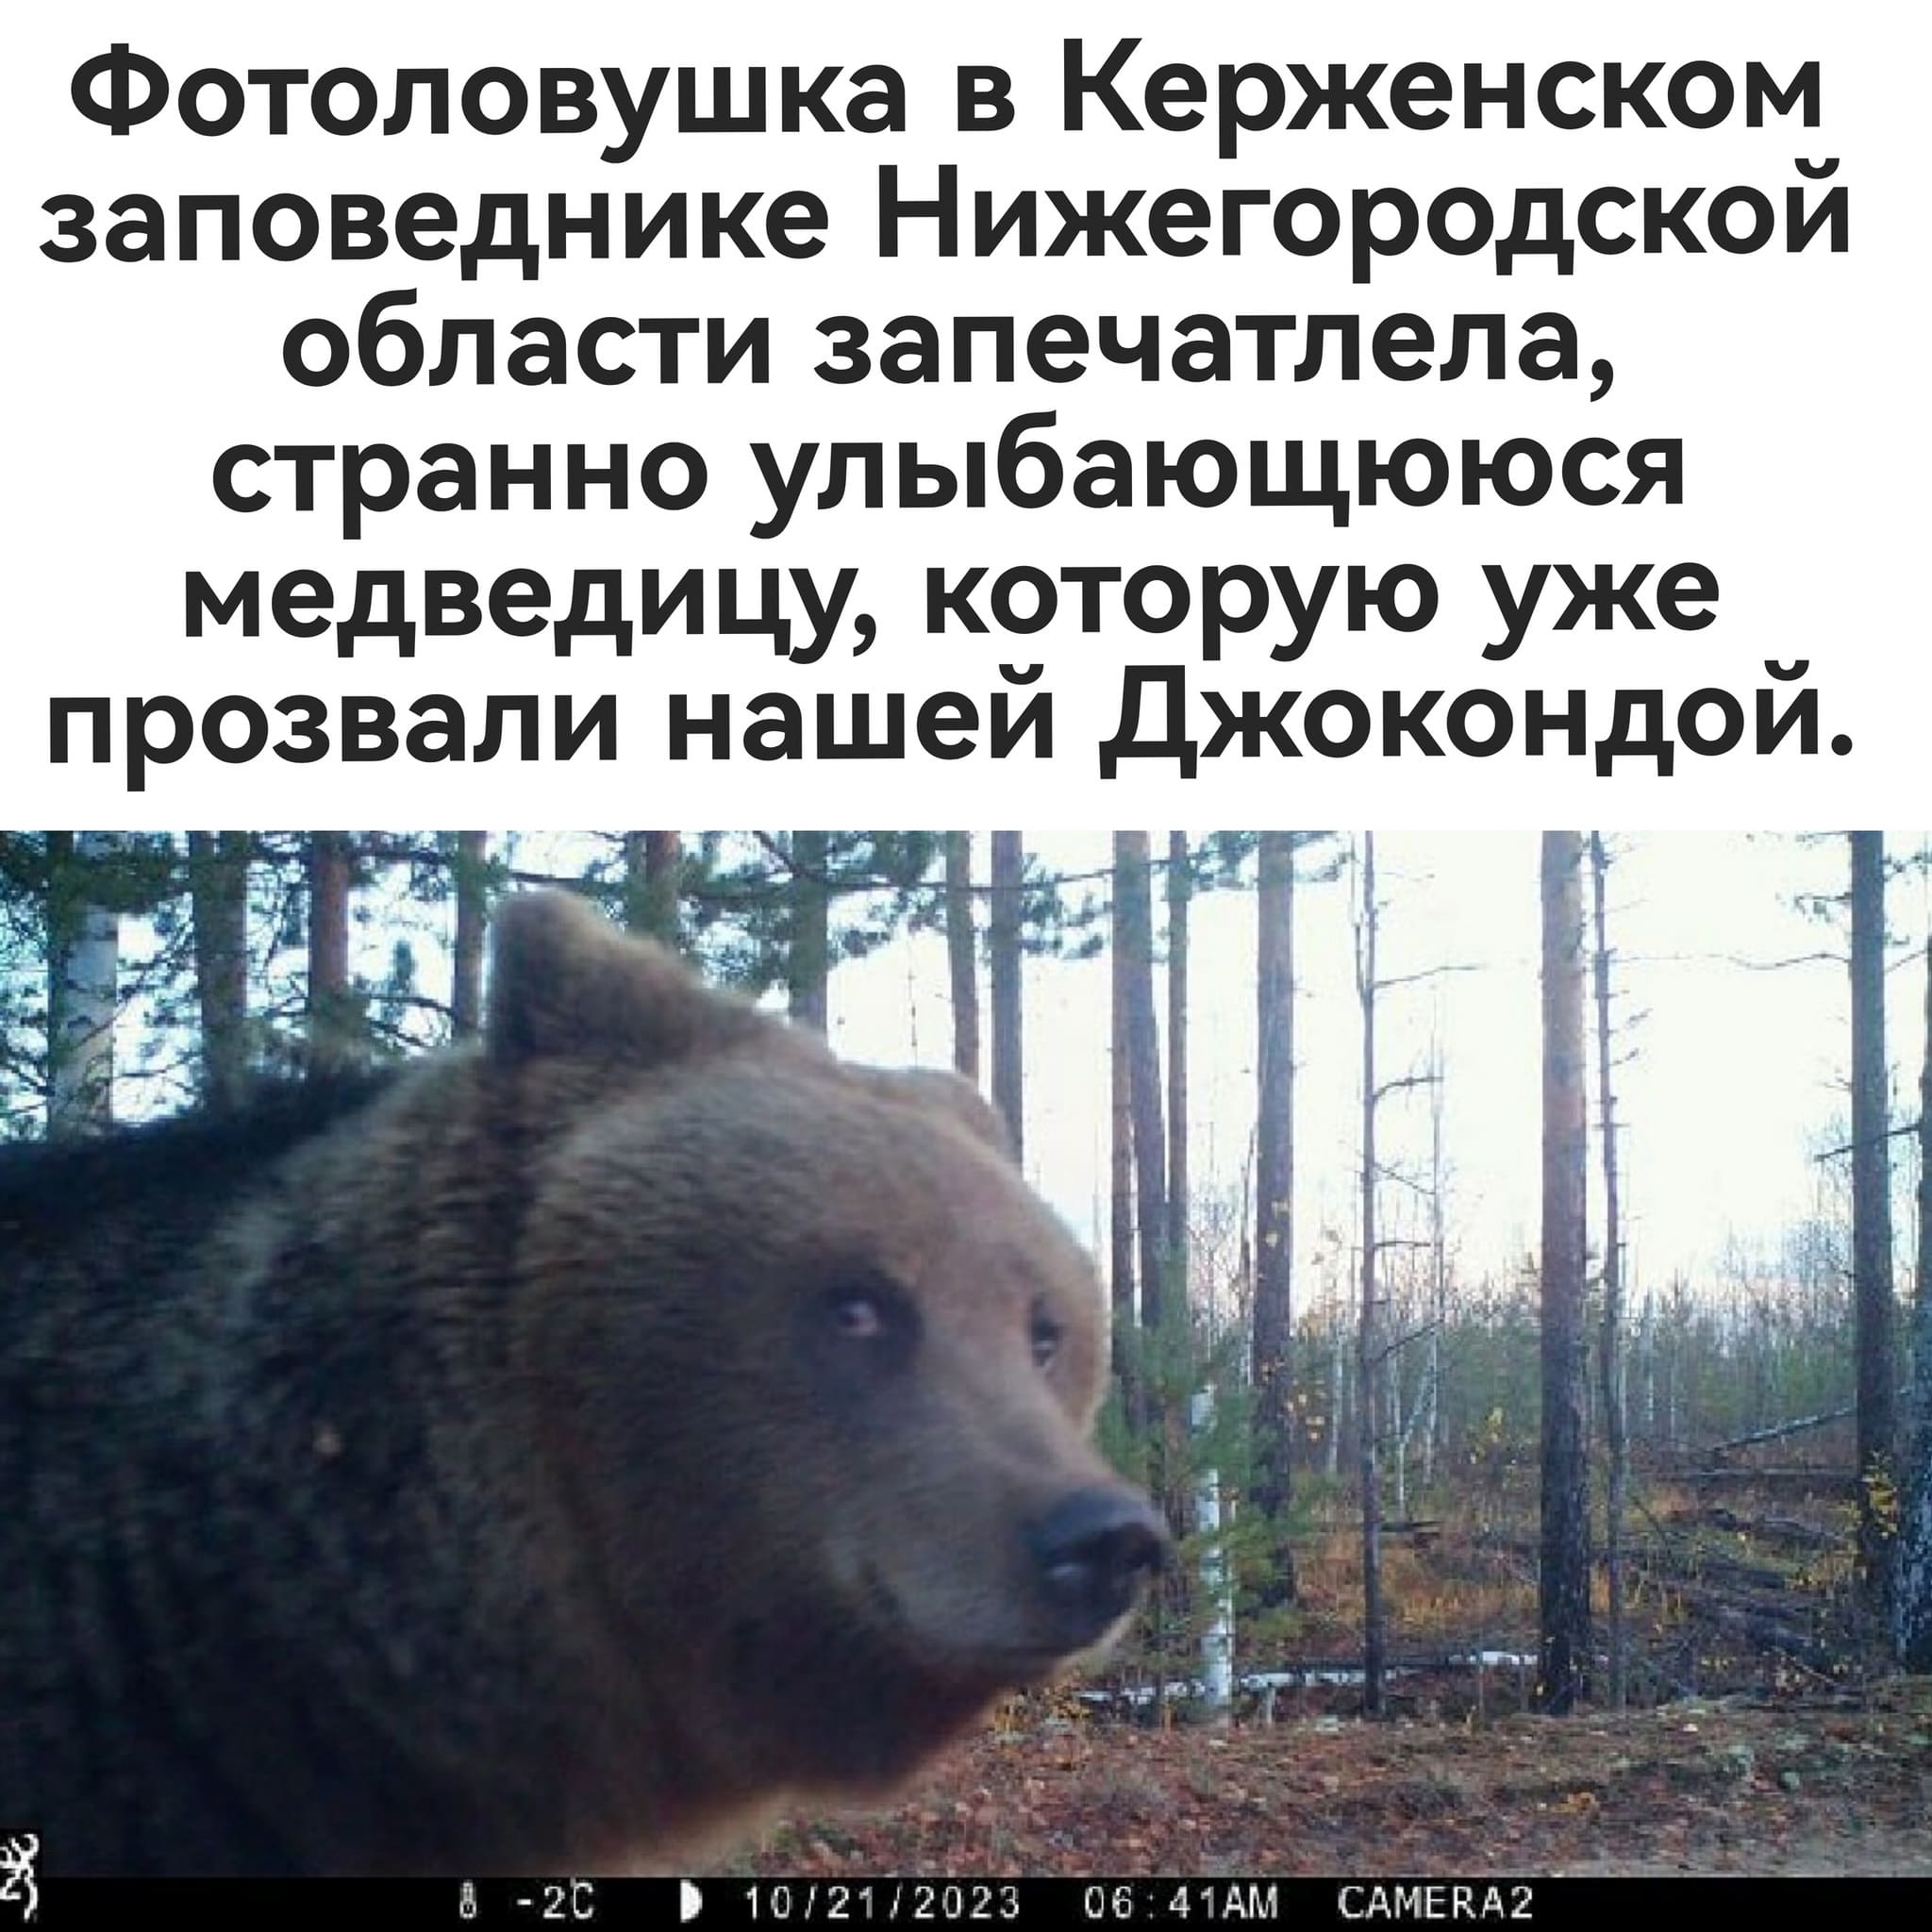 Фотоловушка в Керженском заповеднике Нижегородской области запечатлела, странно улыбающююся медведицу, которую уже прозвали нашей Джокондой.